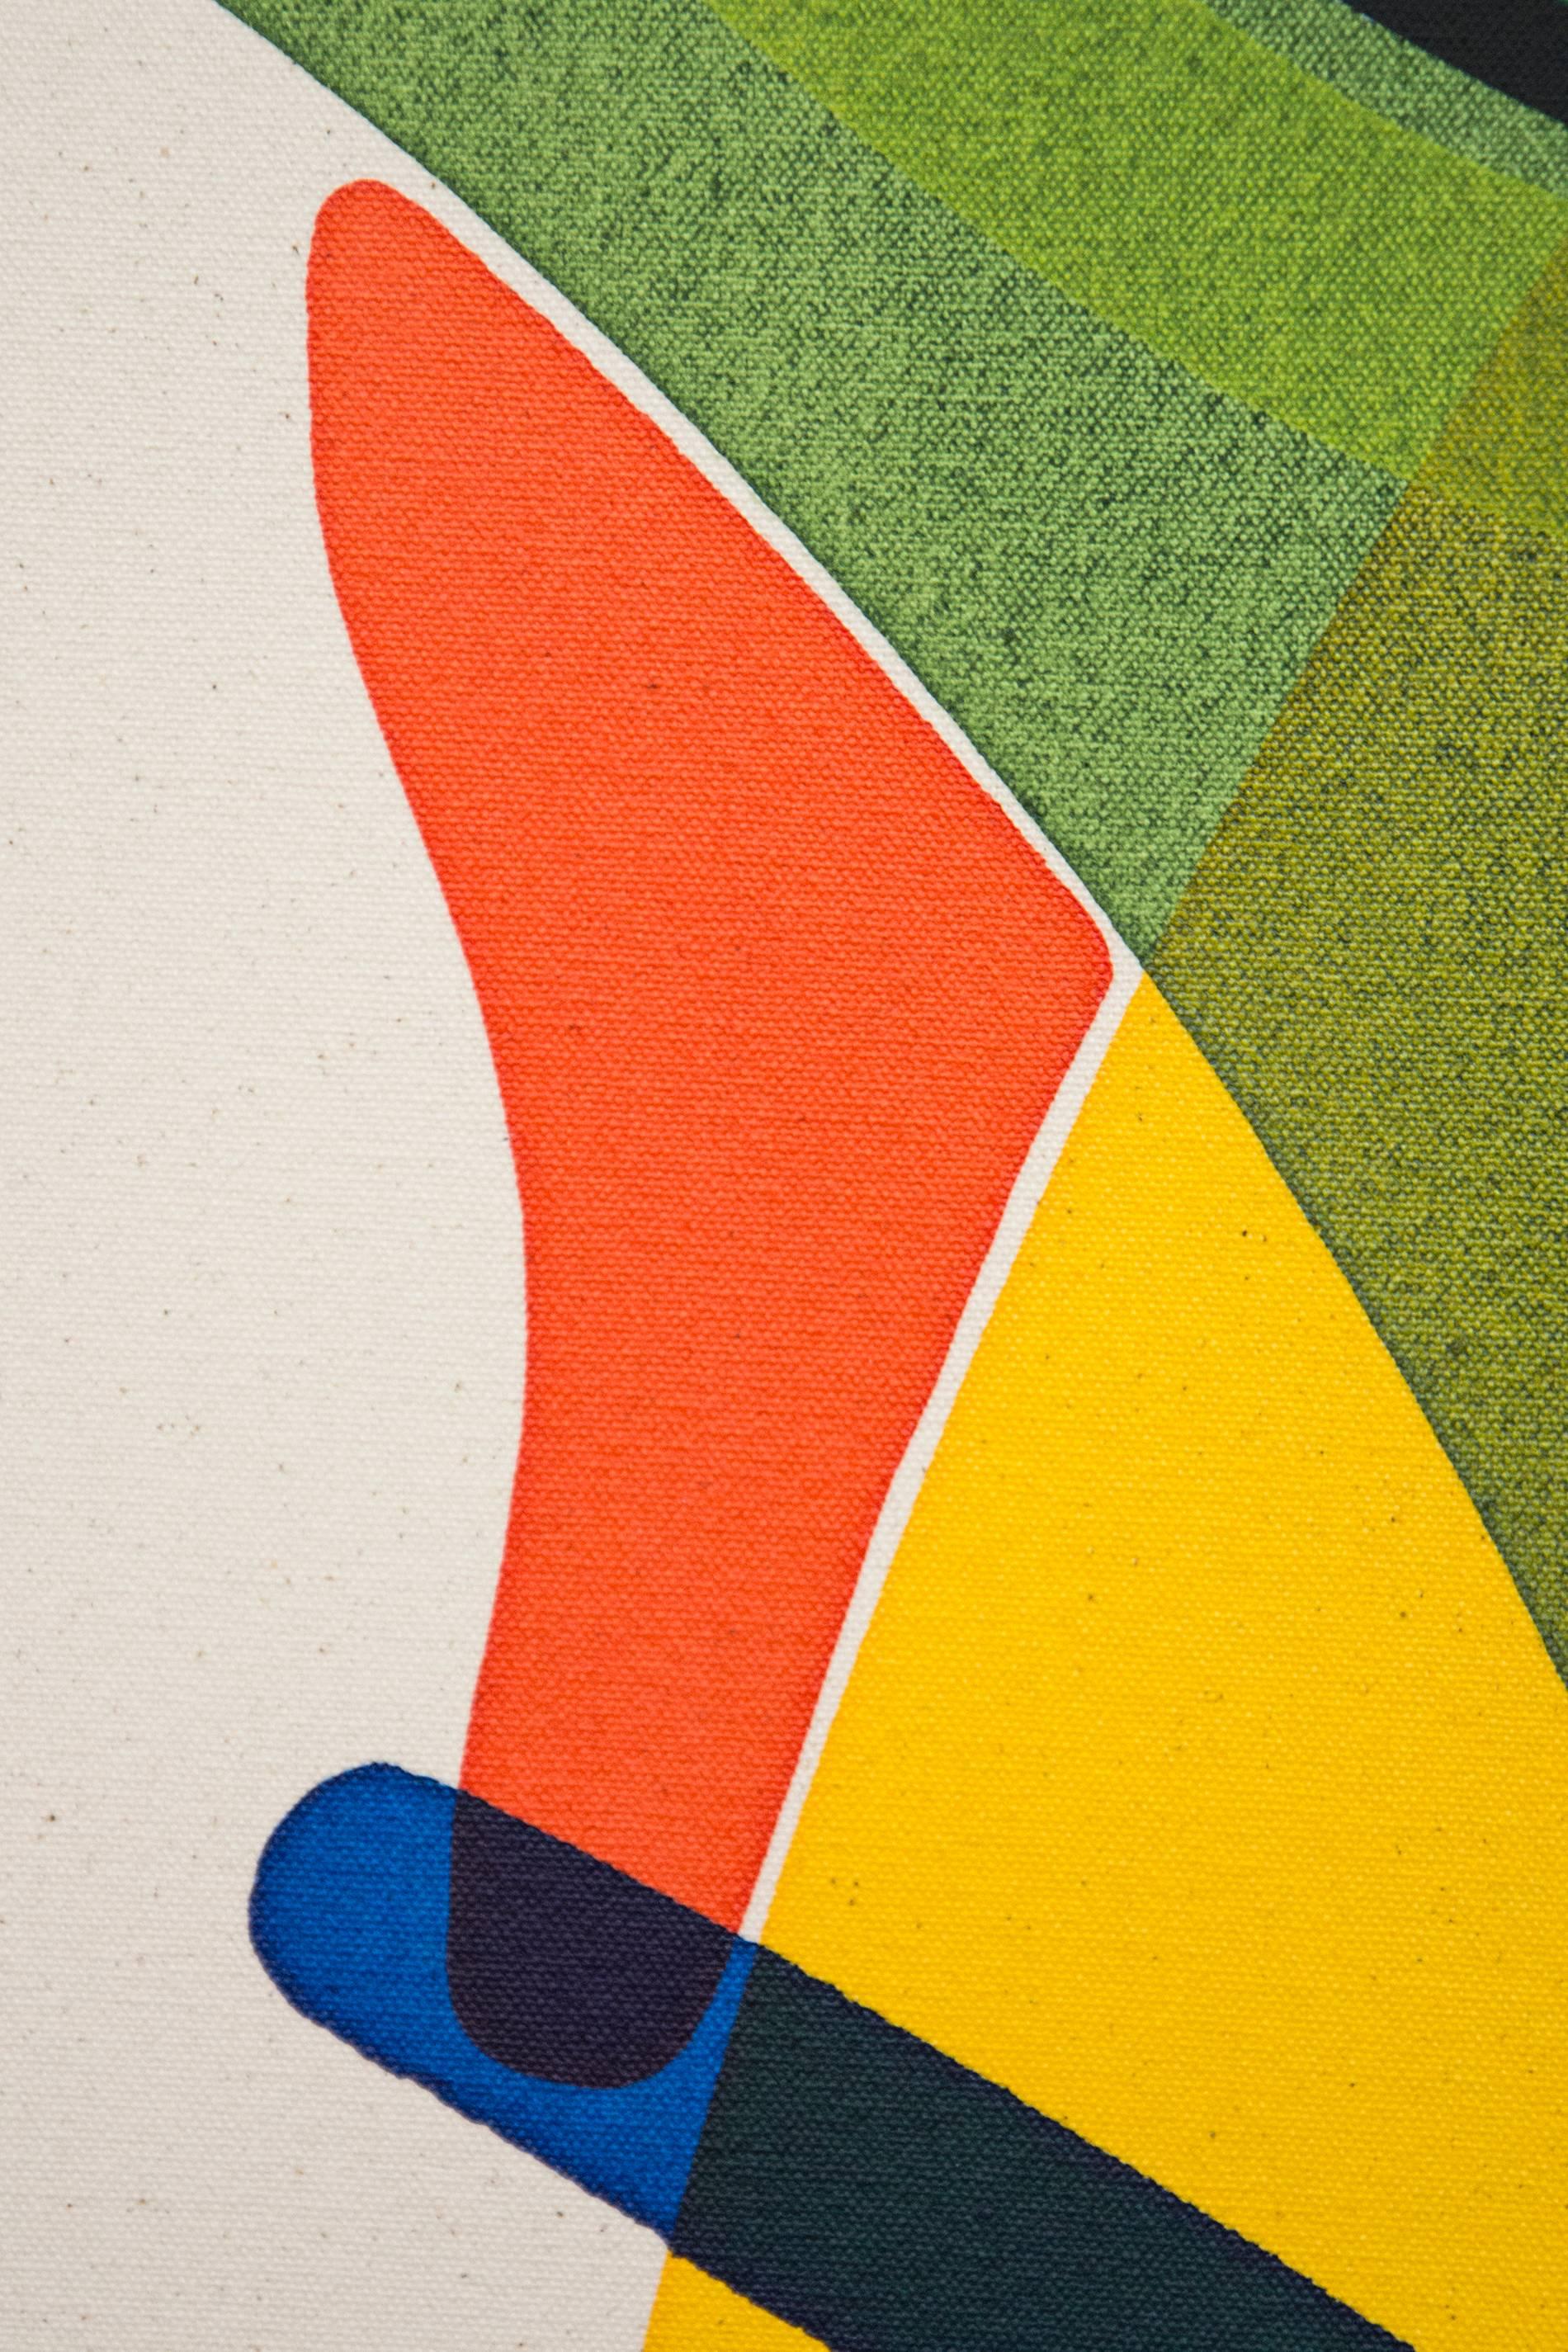 Dieses fesselnde figurative Werk in kühnen abstrakten Formen und leuchtenden Farben wurde von Aron Hill gemalt. Die Künstlerin aus Calgary verwendet Bögen aus reinen Farben - Lila, Lindgrün, Türkis und Waldgrün -, die sich mit einer kopfähnlichen,